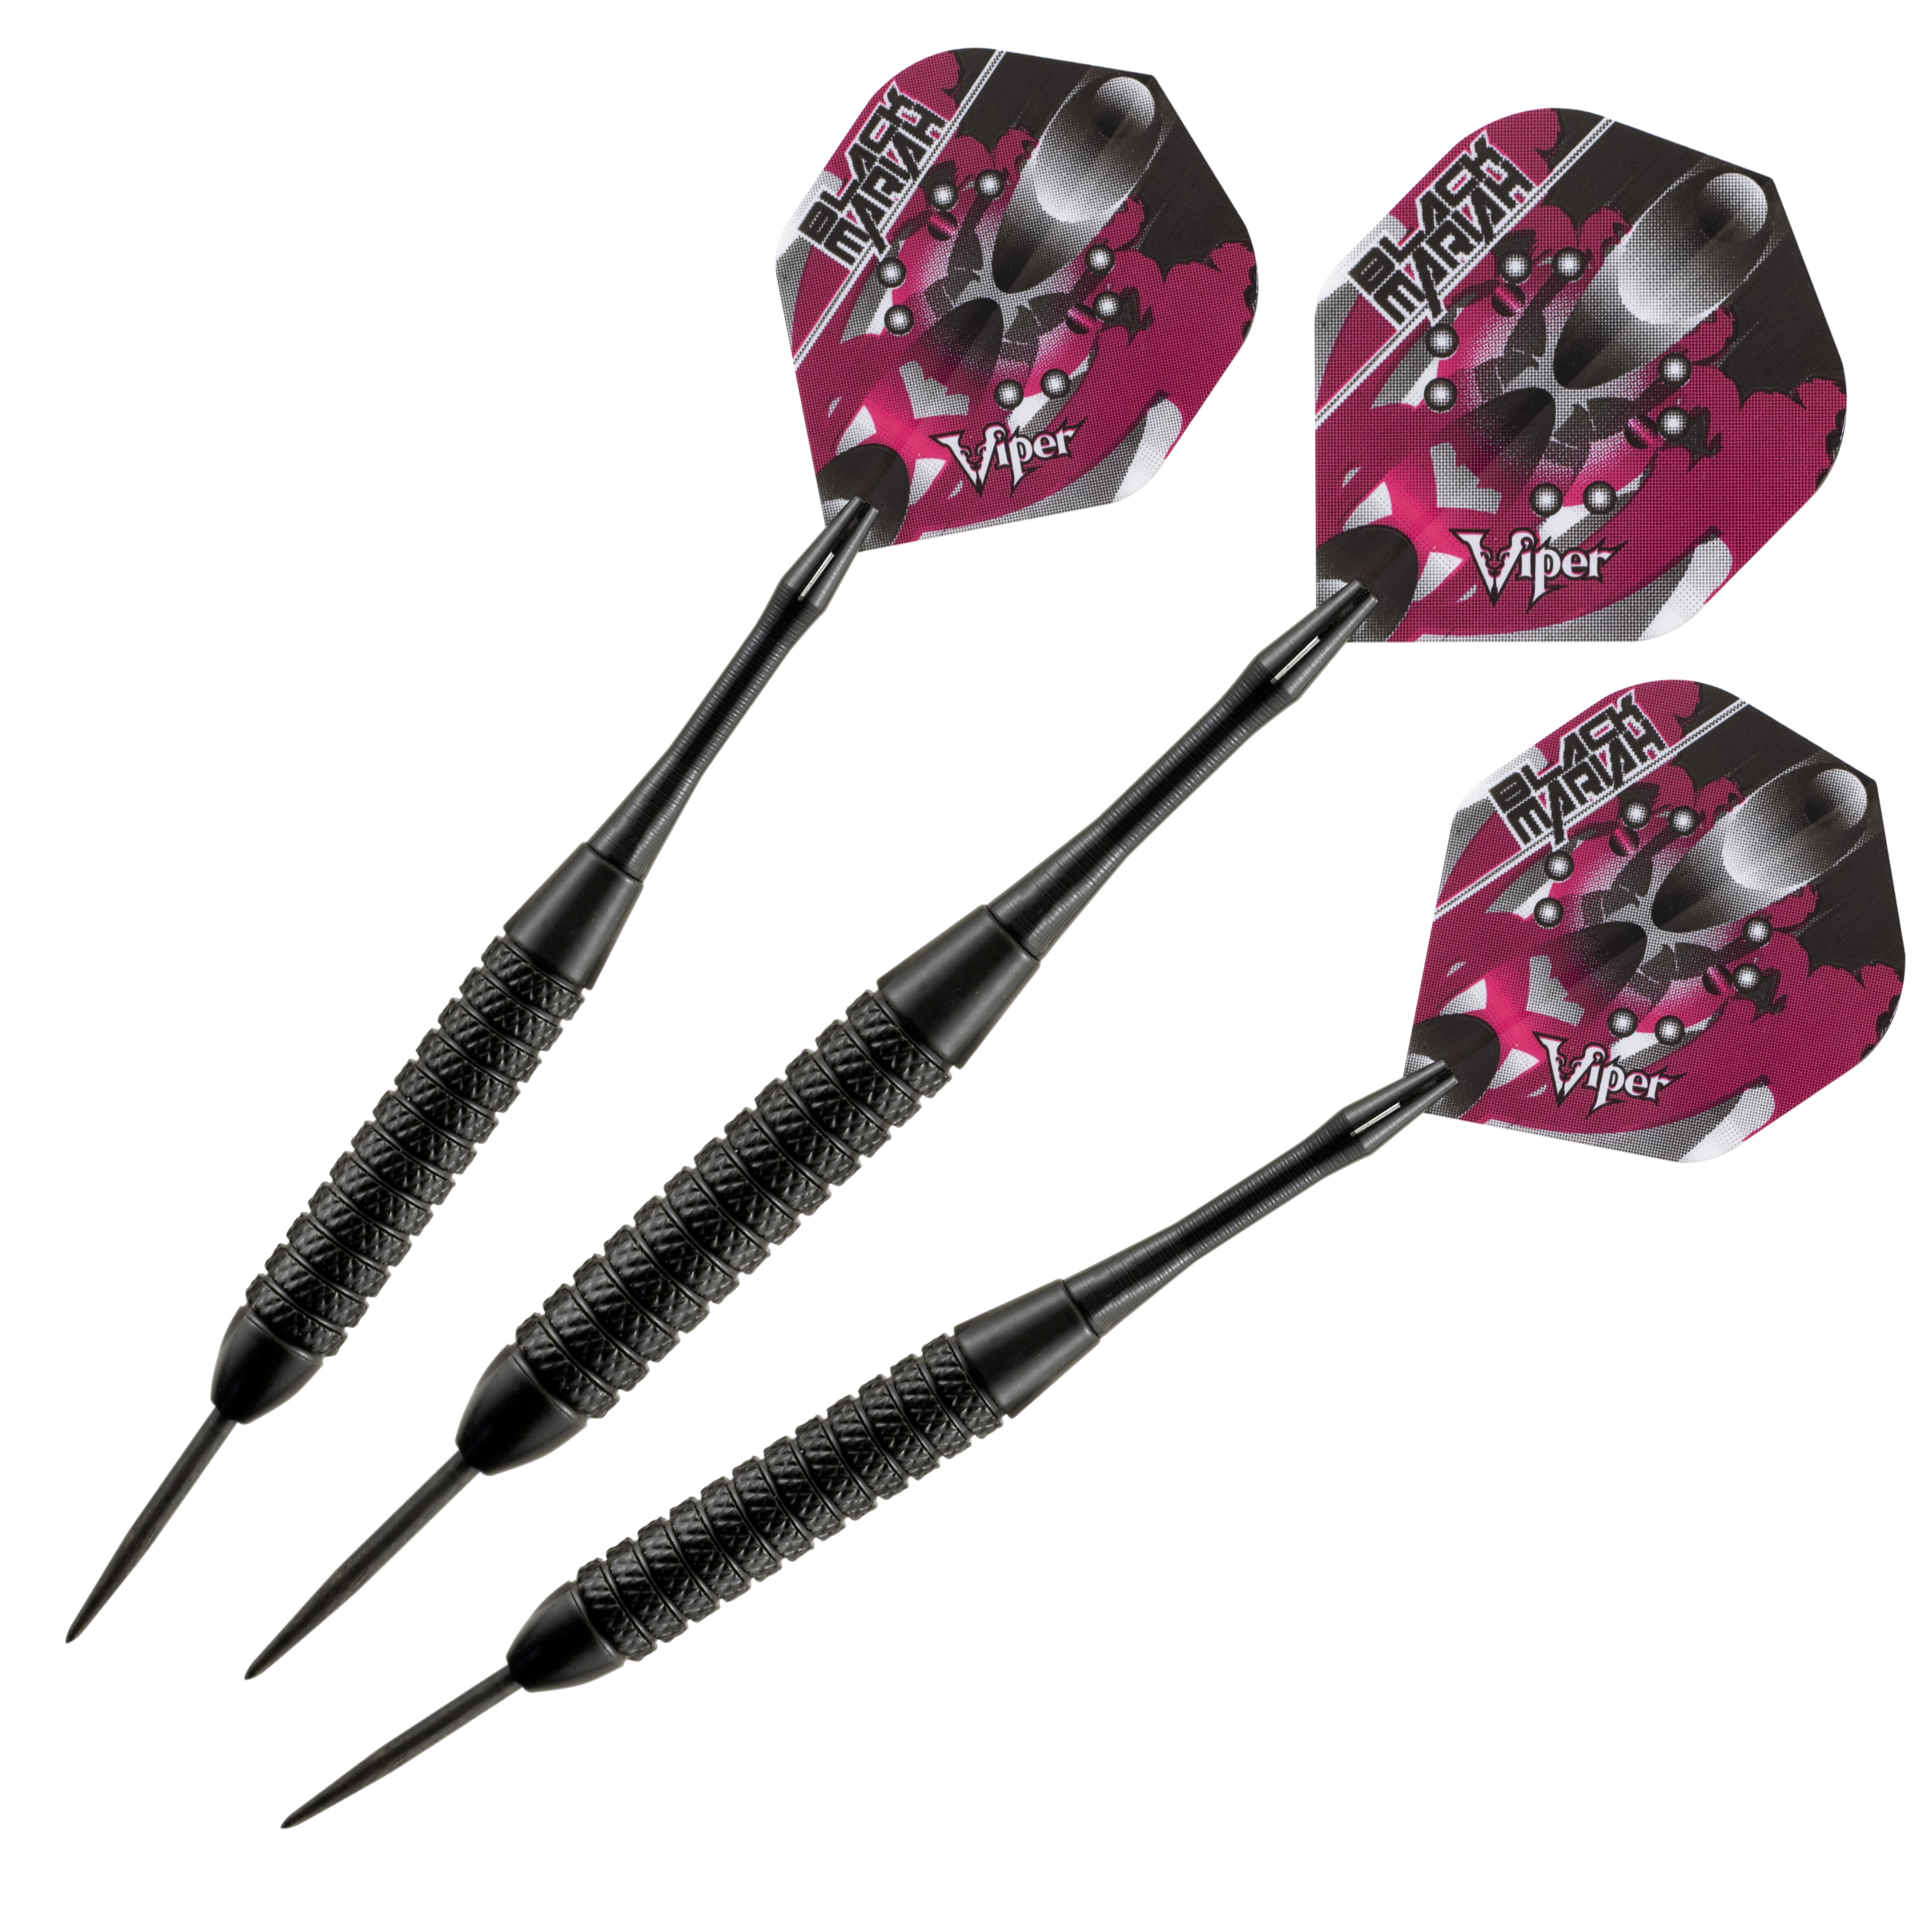 Viper Sure Grip Darts BLACK 16 or 18 gm Soft Tip Dart Set Pink Diva Flights 